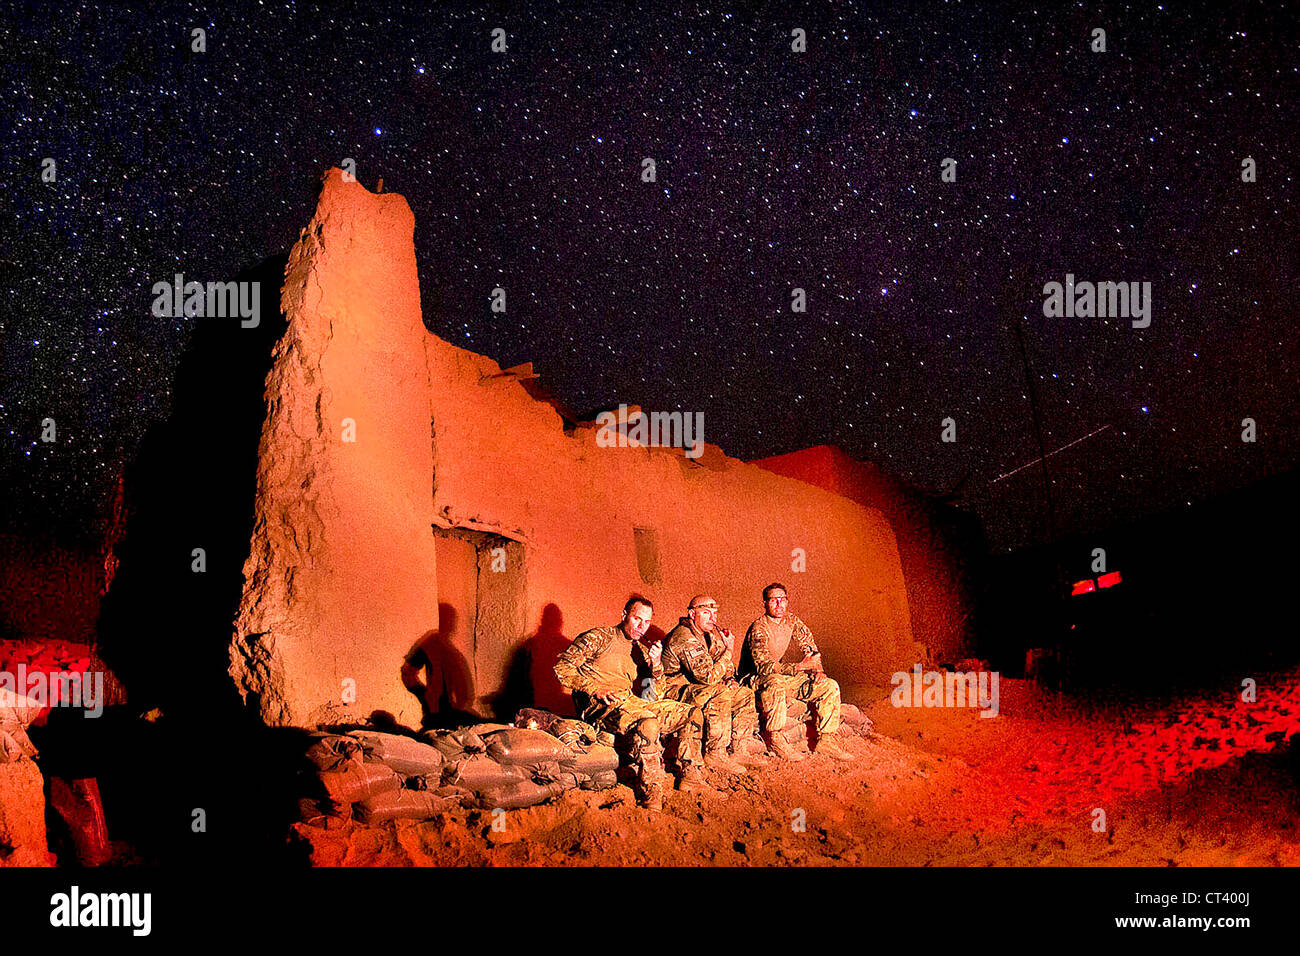 US Army paracadutisti con l'ottantaduesima Airborne Division guardare al cielo notturno al comune di sicurezza ferroviaria Hasan Giugno 11, 2012 nel sud della provincia di Ghazni, Afghanistan. Eretto a poche settimane prima nel sud del distretto di Gilan, nel mondo rurale post ha praticamente una vista senza ostacoli del cielo su chiari notti. Foto Stock